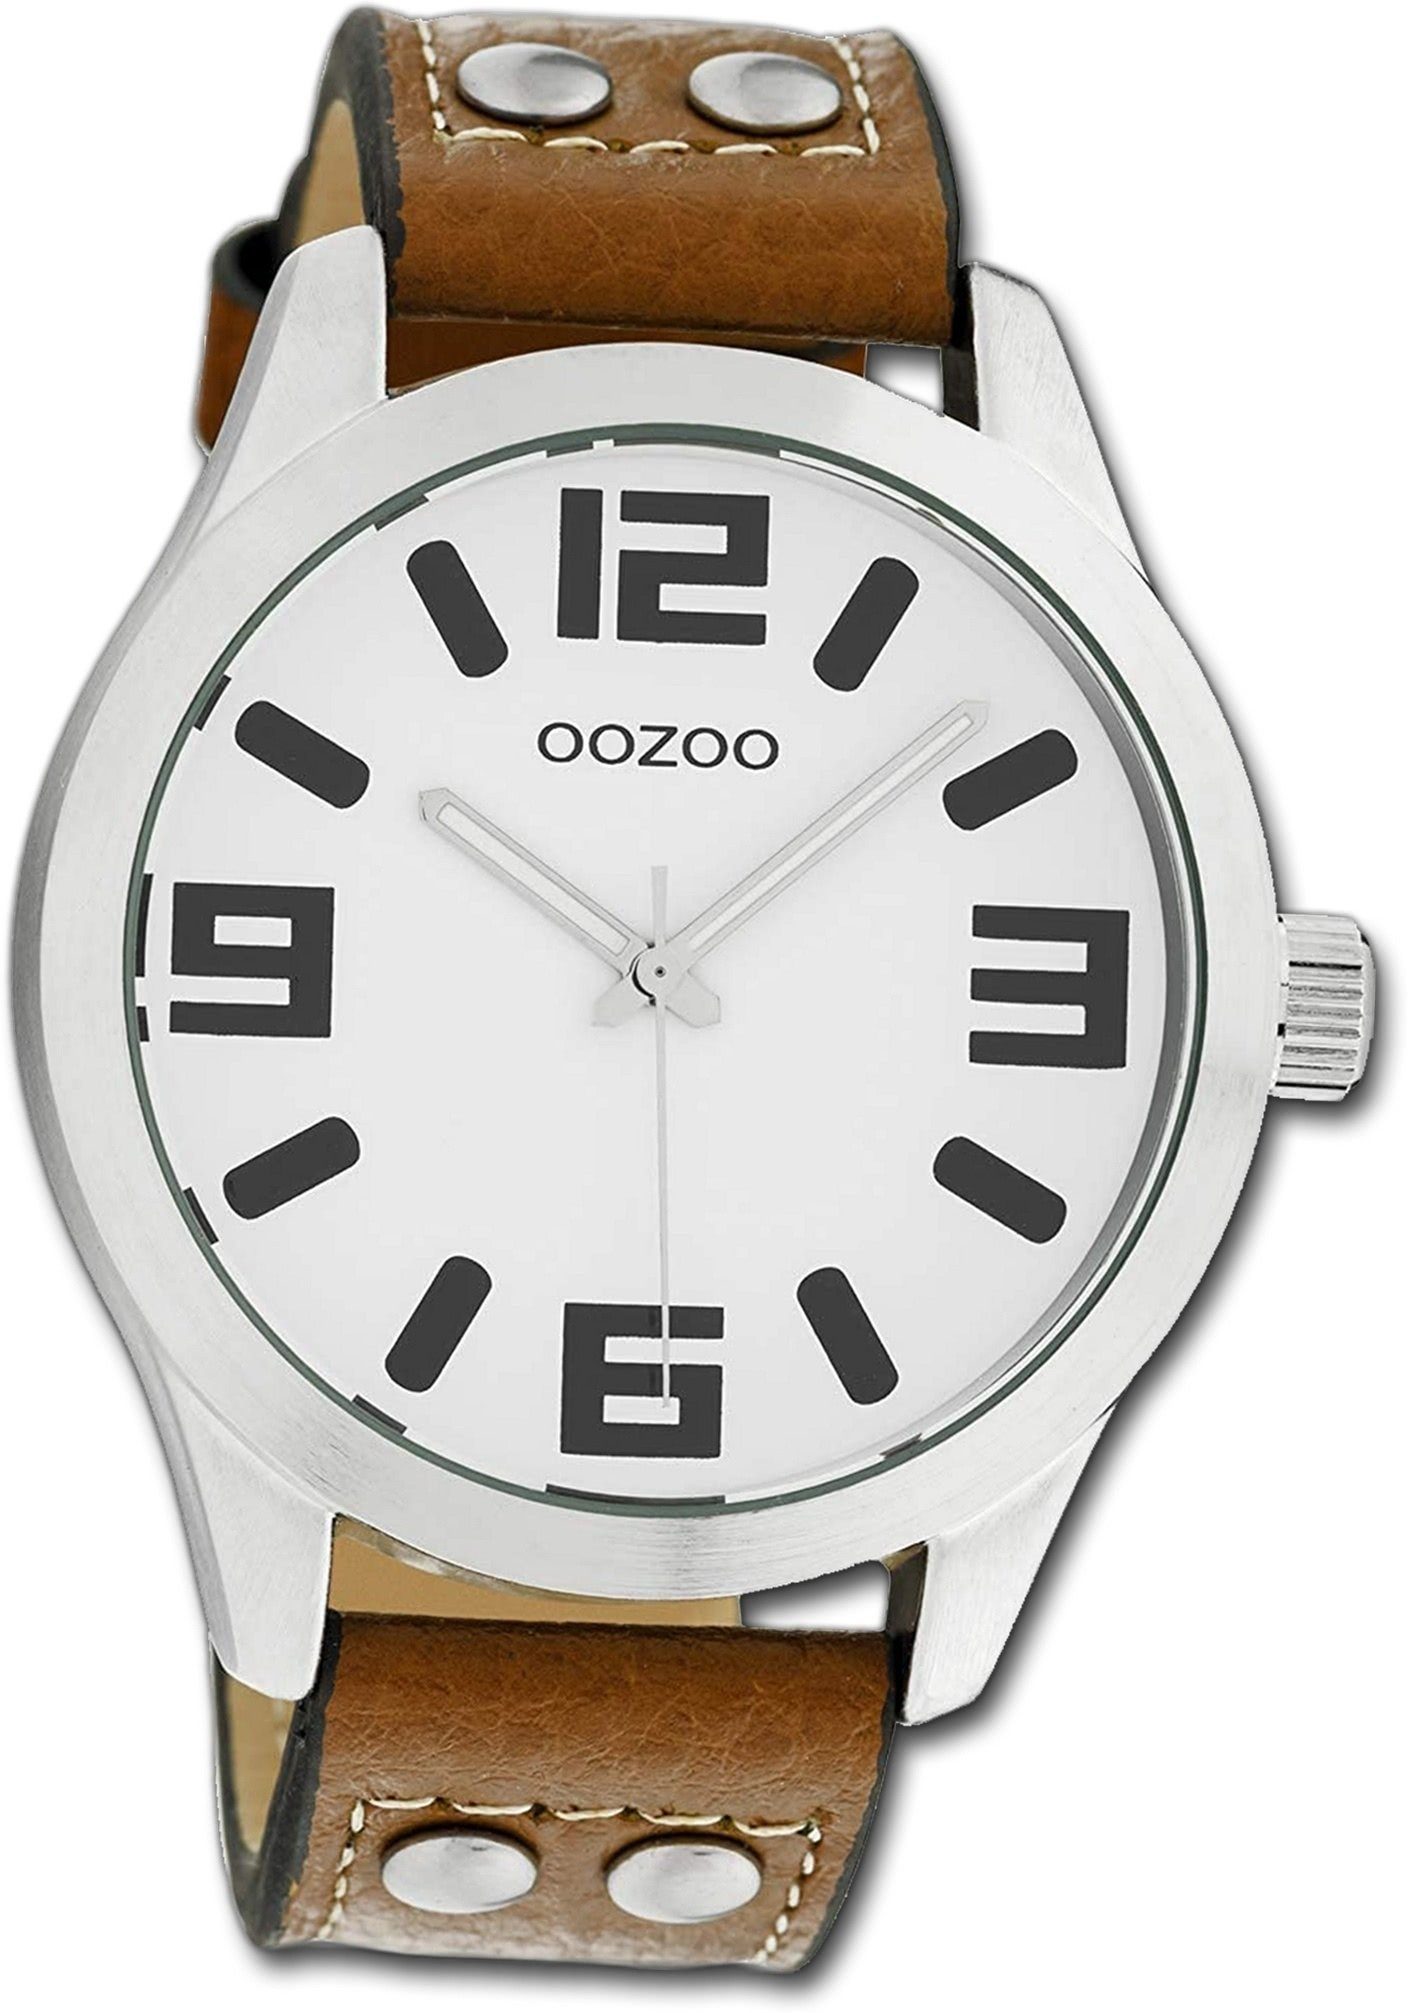 OOZOO Quarzuhr Oozoo Leder Damen Uhr C1051 Analog, Damenuhr Lederarmband braun, rundes Gehäuse, extra groß (ca. 46mm)